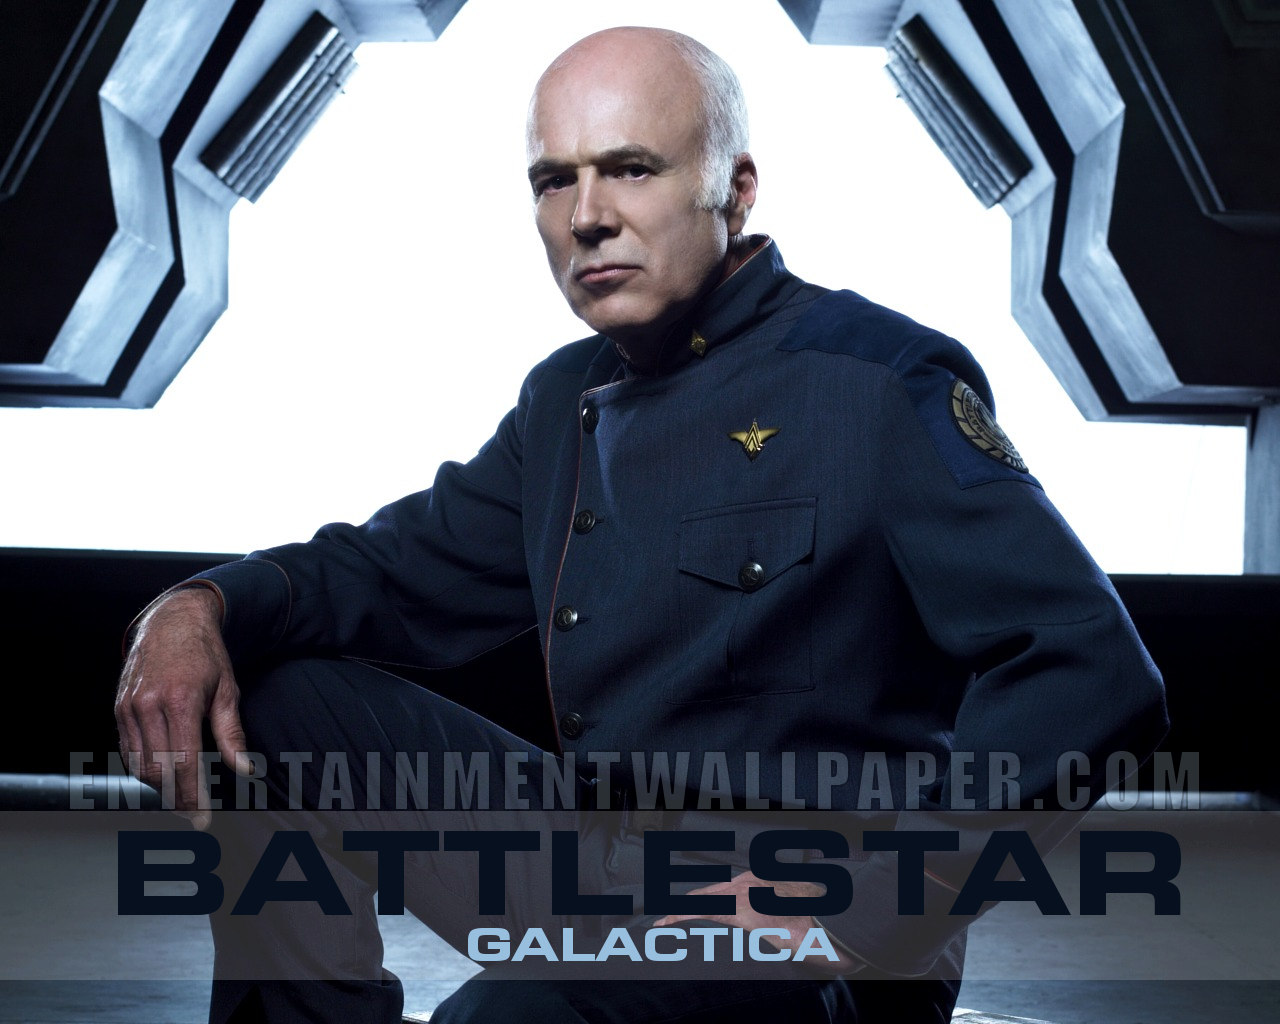 Battlestar Galactica Wallpaper - Saul Tigh , HD Wallpaper & Backgrounds